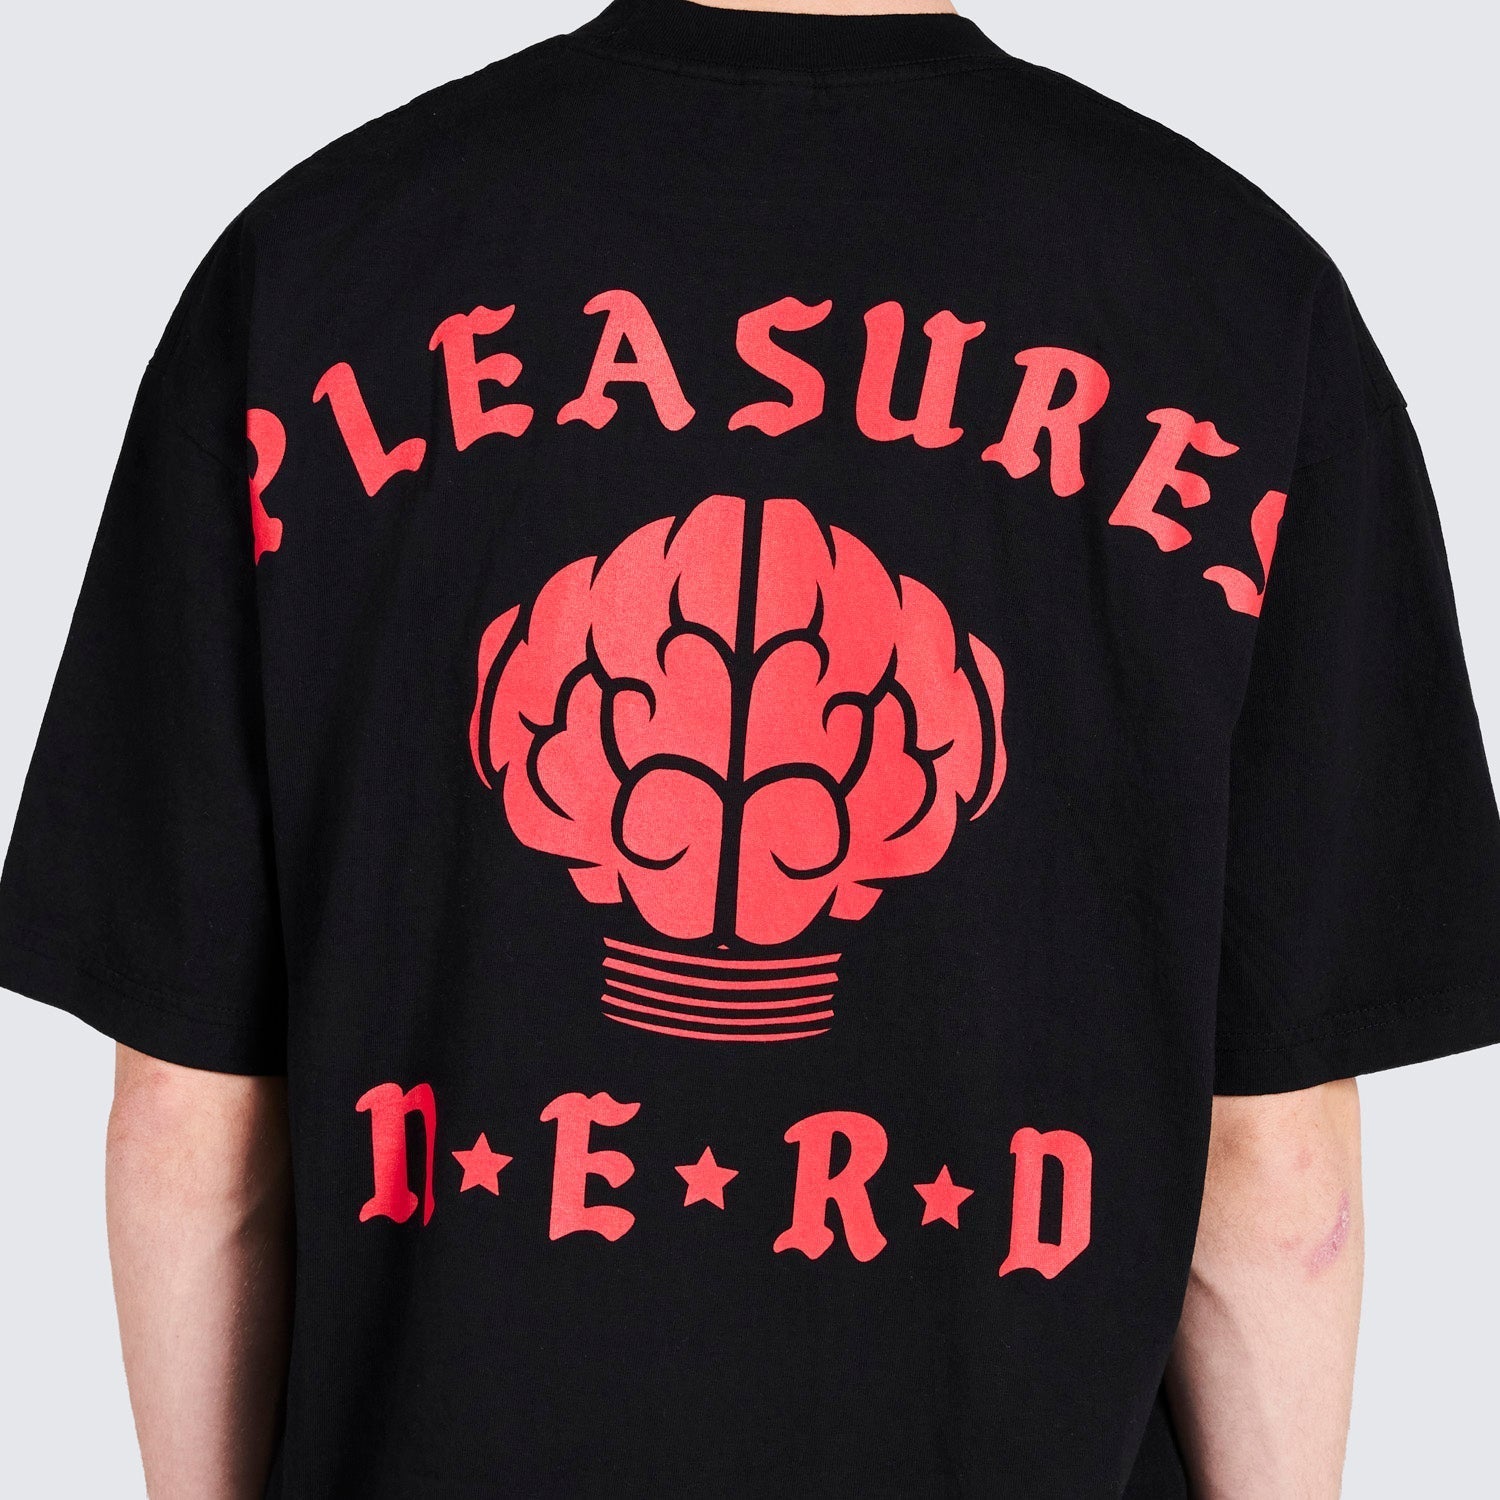 Pleasures Men Rockstar T-Shirt Black - T-SHIRTS - Canada